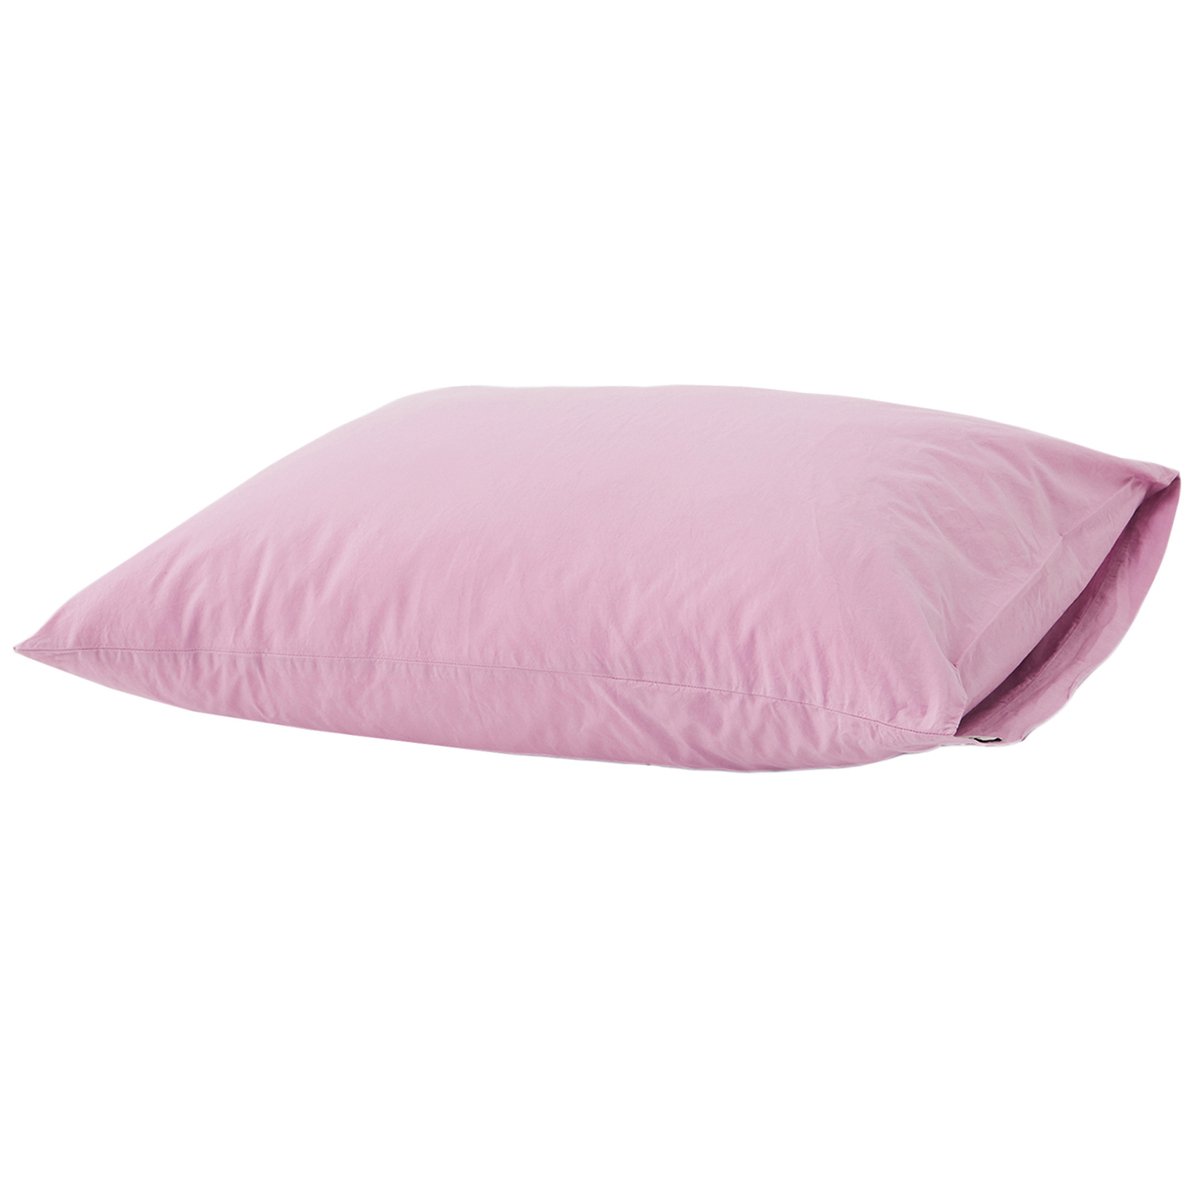 Tekla Pillow sham, 50 x 60 cm, mallow pink | Finnish Design Shop